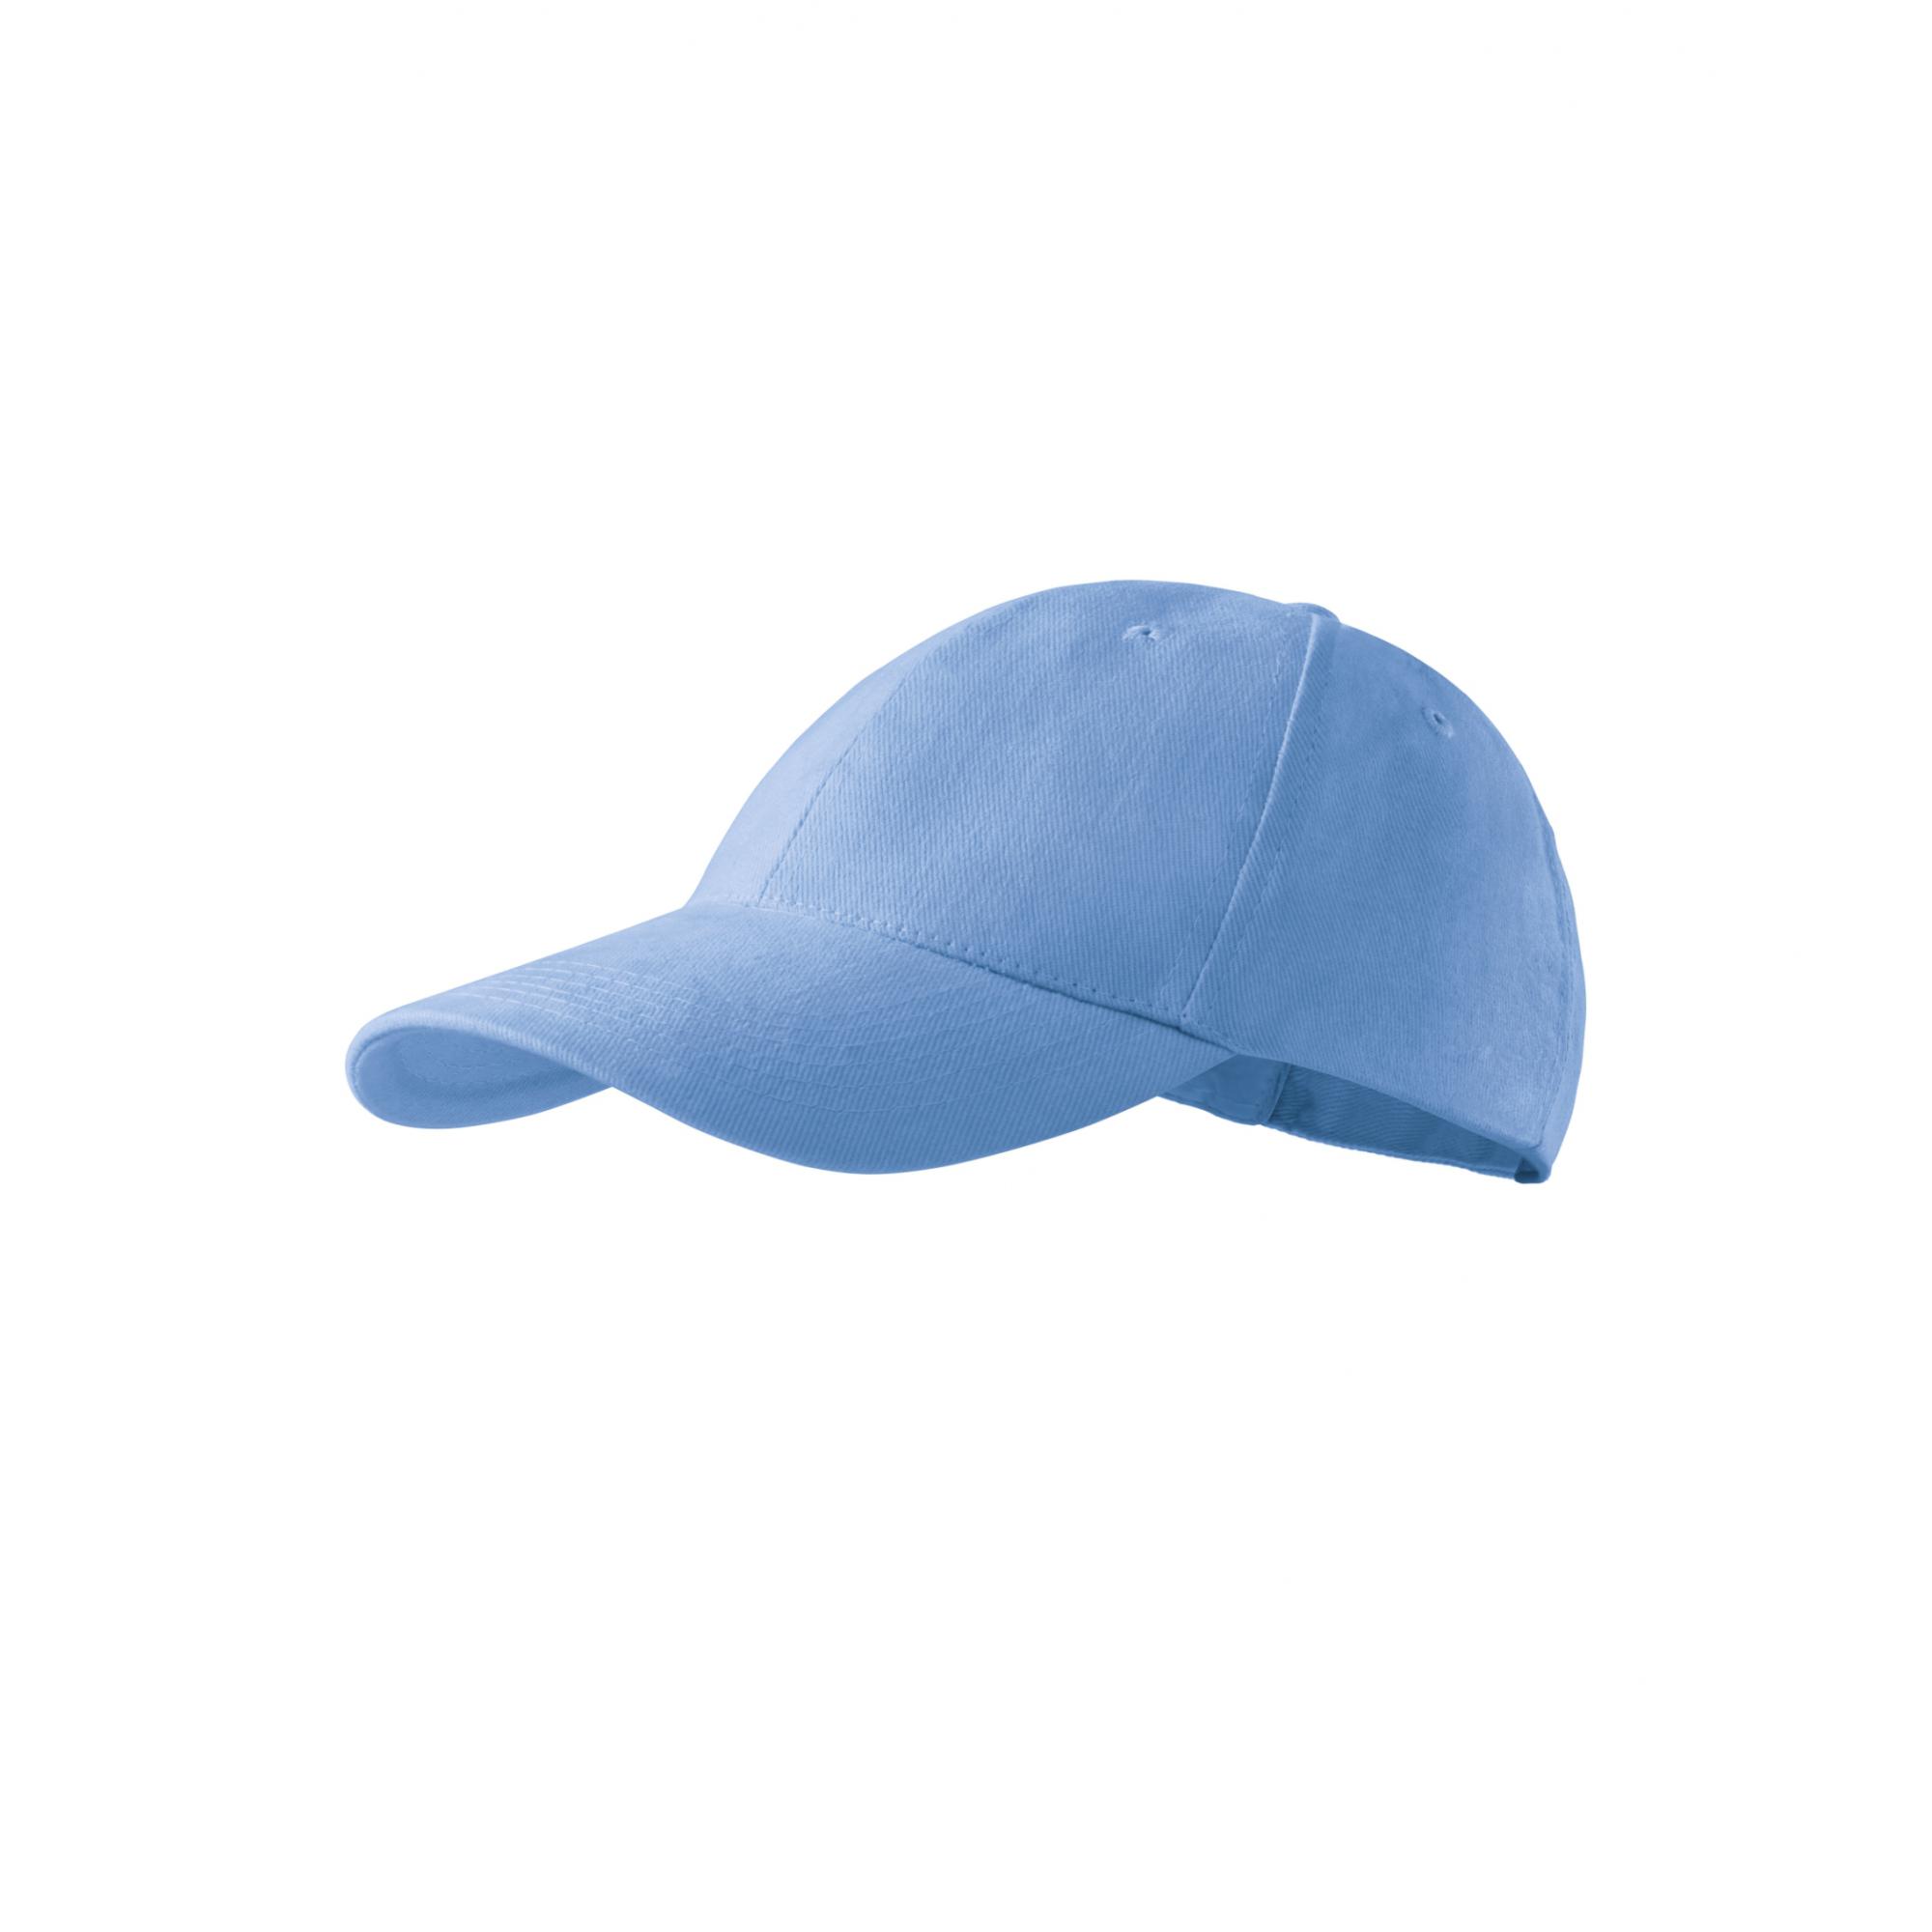 Şapcă pentru copii 6P Kids 303 Albastru deschis Marime universala